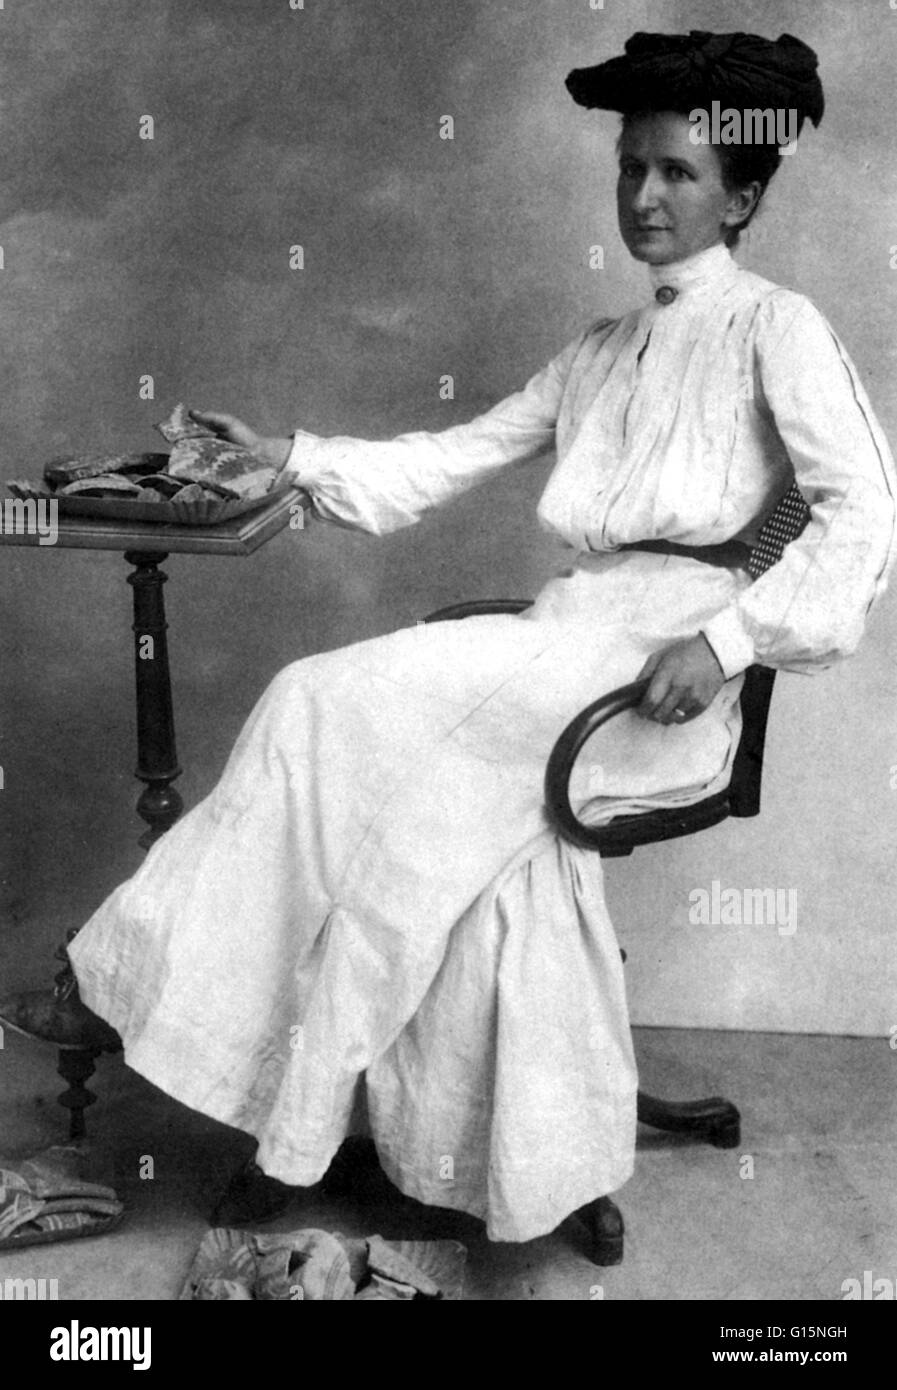 Boyd visualizza pezzi rotti di Minoan bocce, barattoli e vasi in 1902. Harriet Boyd-Hawes (11 Ottobre 1871 - 31 Marzo 1945) era un pionieristico archeologo americano, infermiere e sollievo lavoratore. Nel 1896 ha iniziato la laurea presso la scuola americana di classe Foto Stock